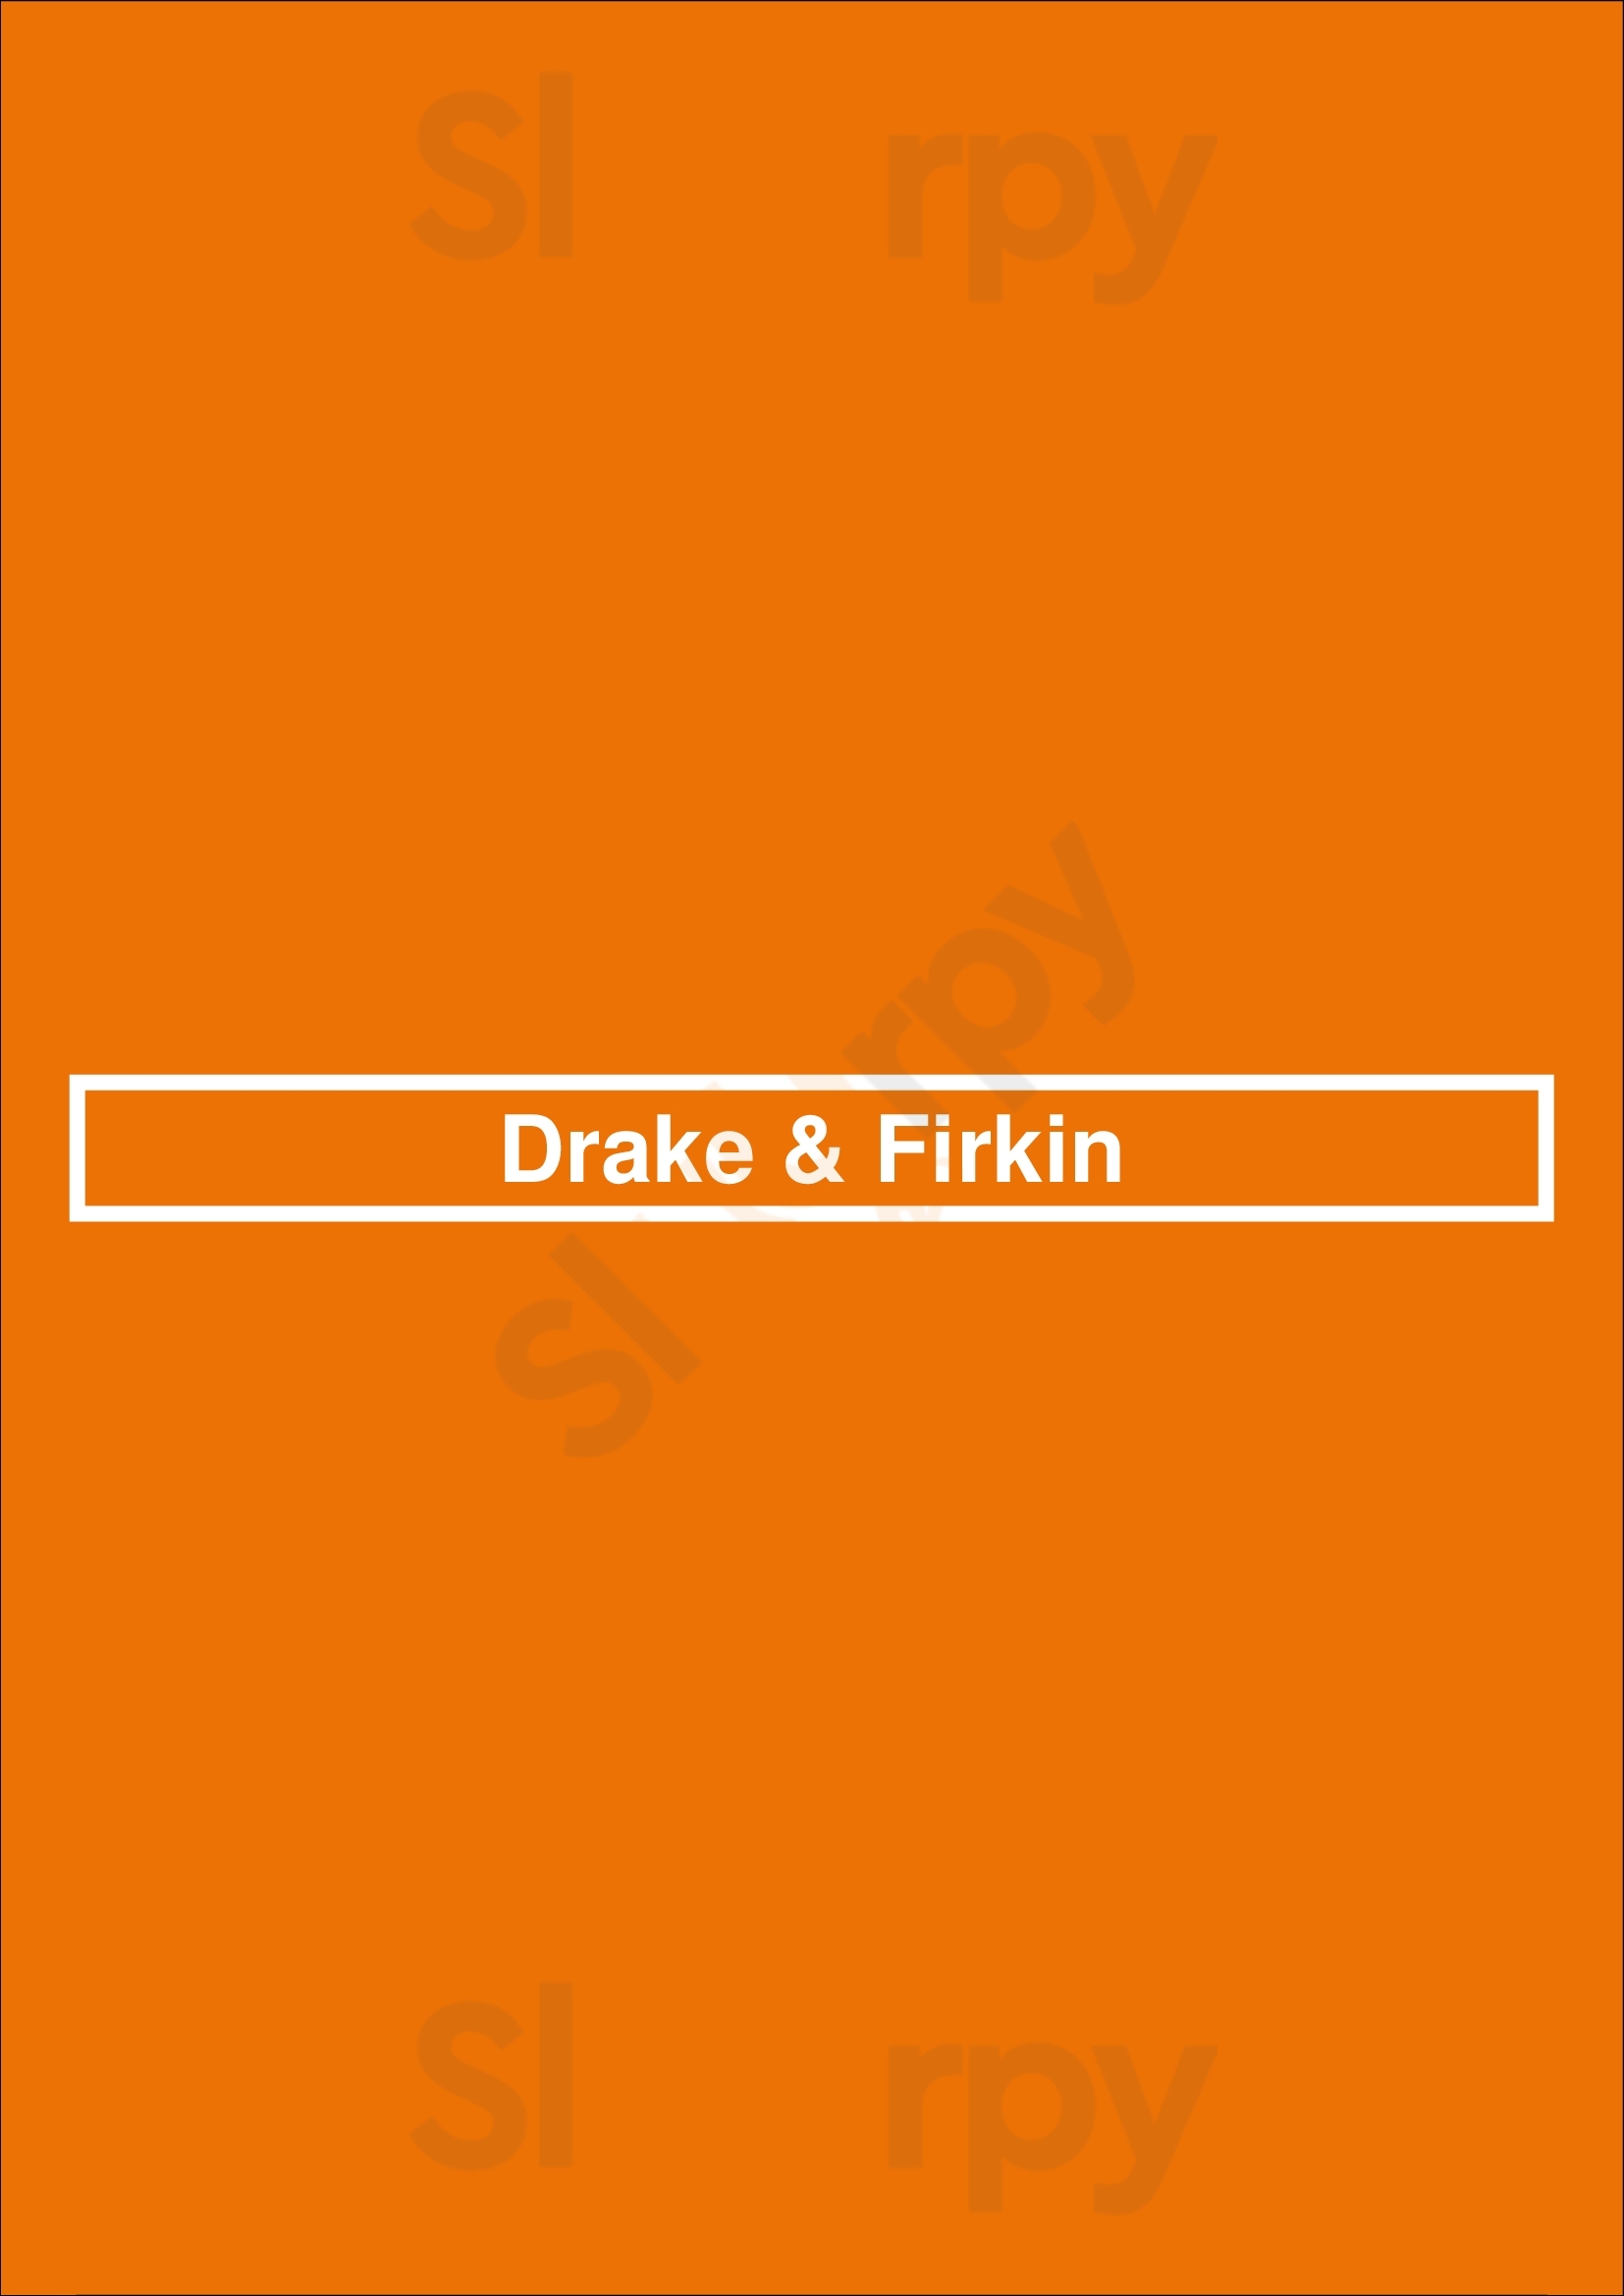 Drake & Firkin Mississauga Menu - 1